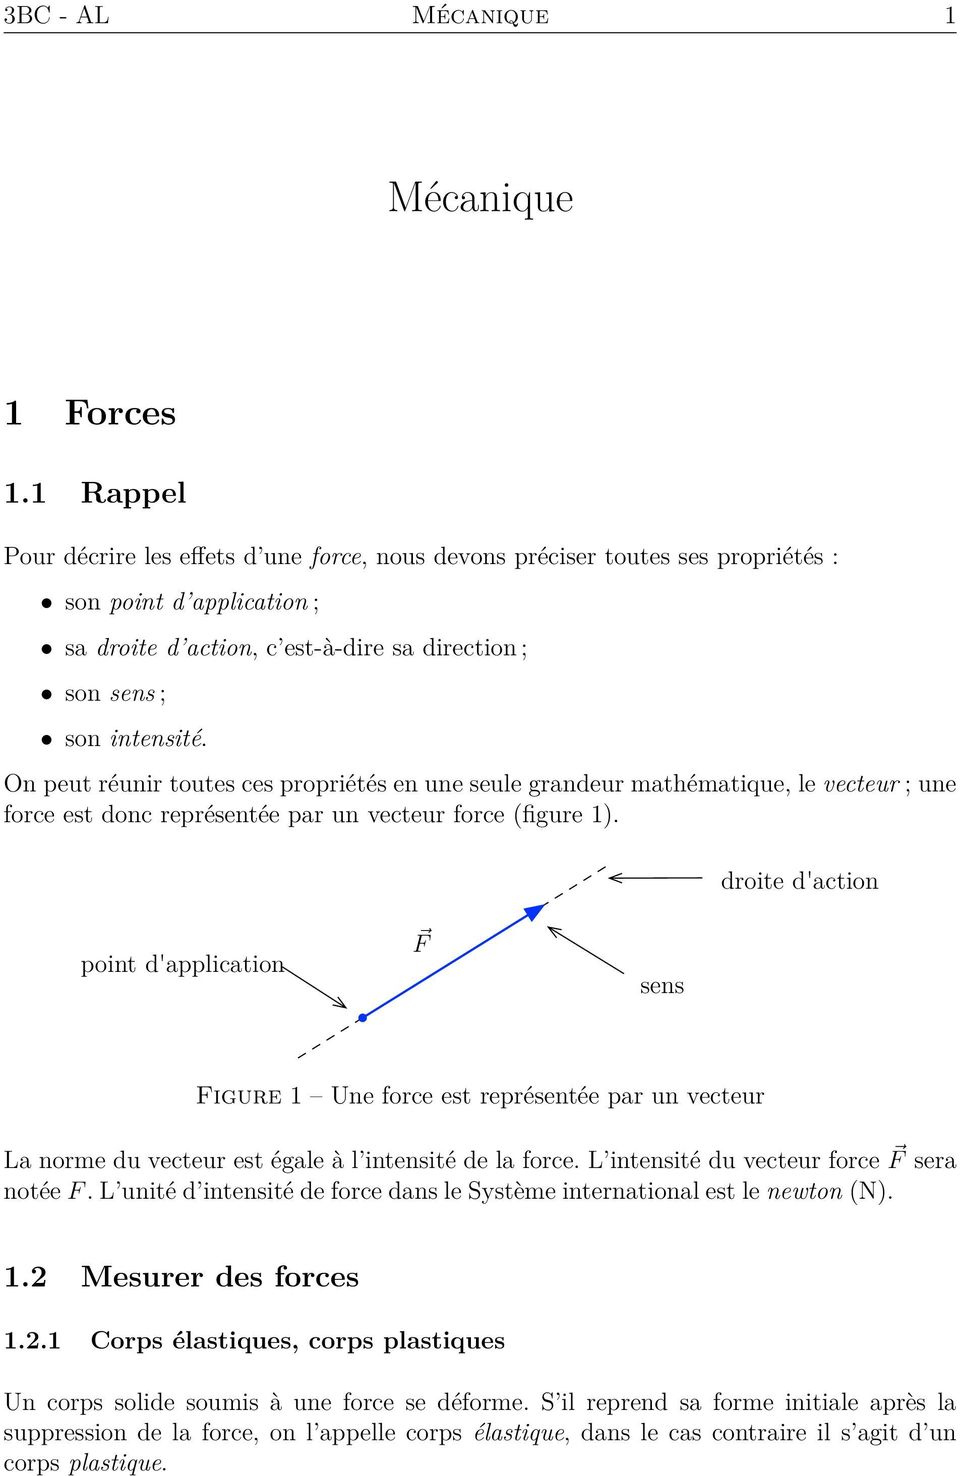 On peut réunir toutes ces propriétés en une seule grandeur mathématique, le vecteur ; une force est donc représentée par un vecteur force (figure 1).